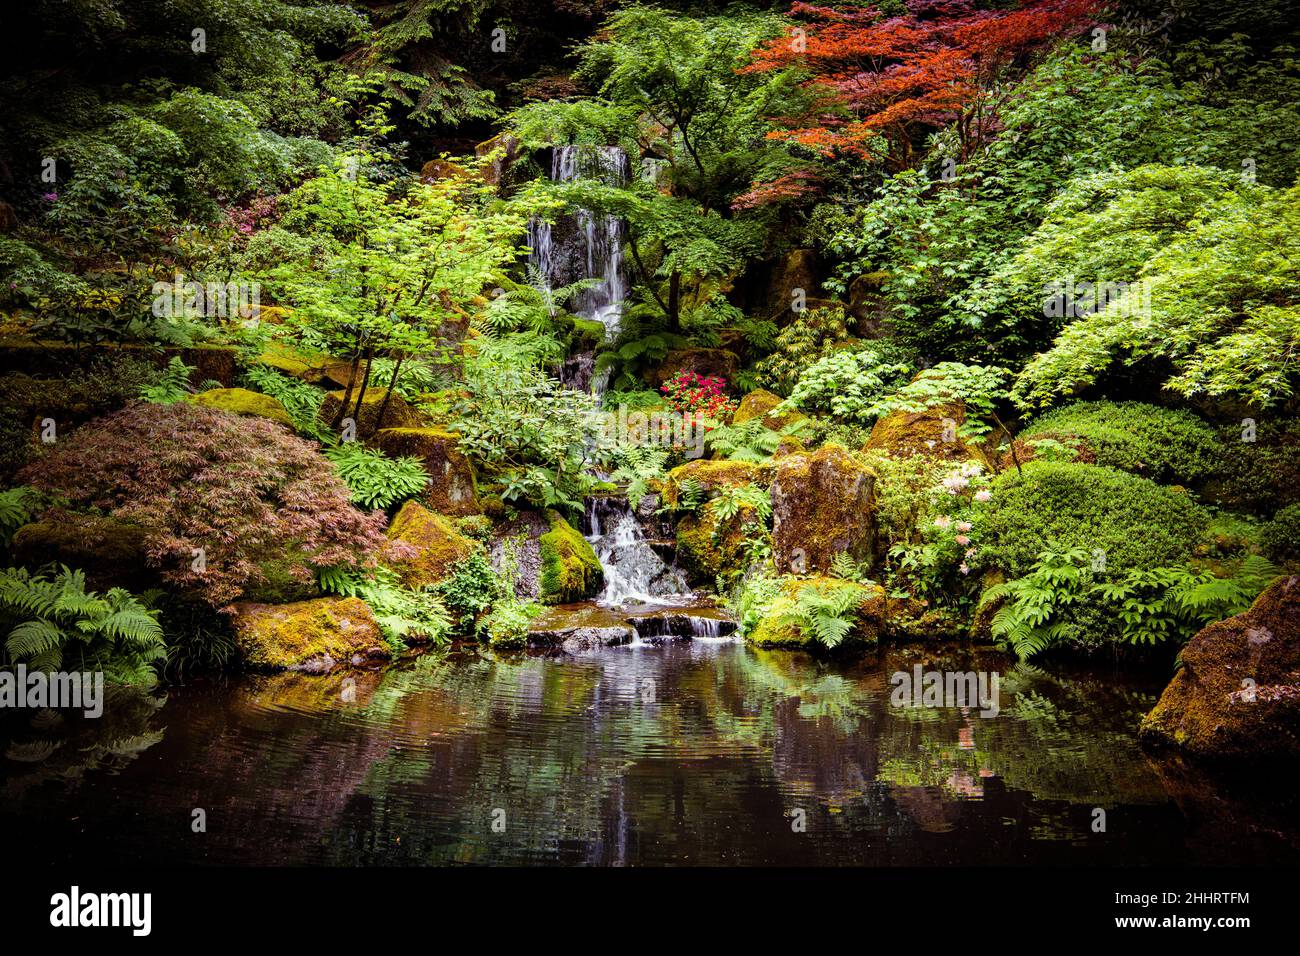 Tranquillo giardino scena con una cascata e un laghetto calmo in una scena di alberi e fiori belli Foto Stock